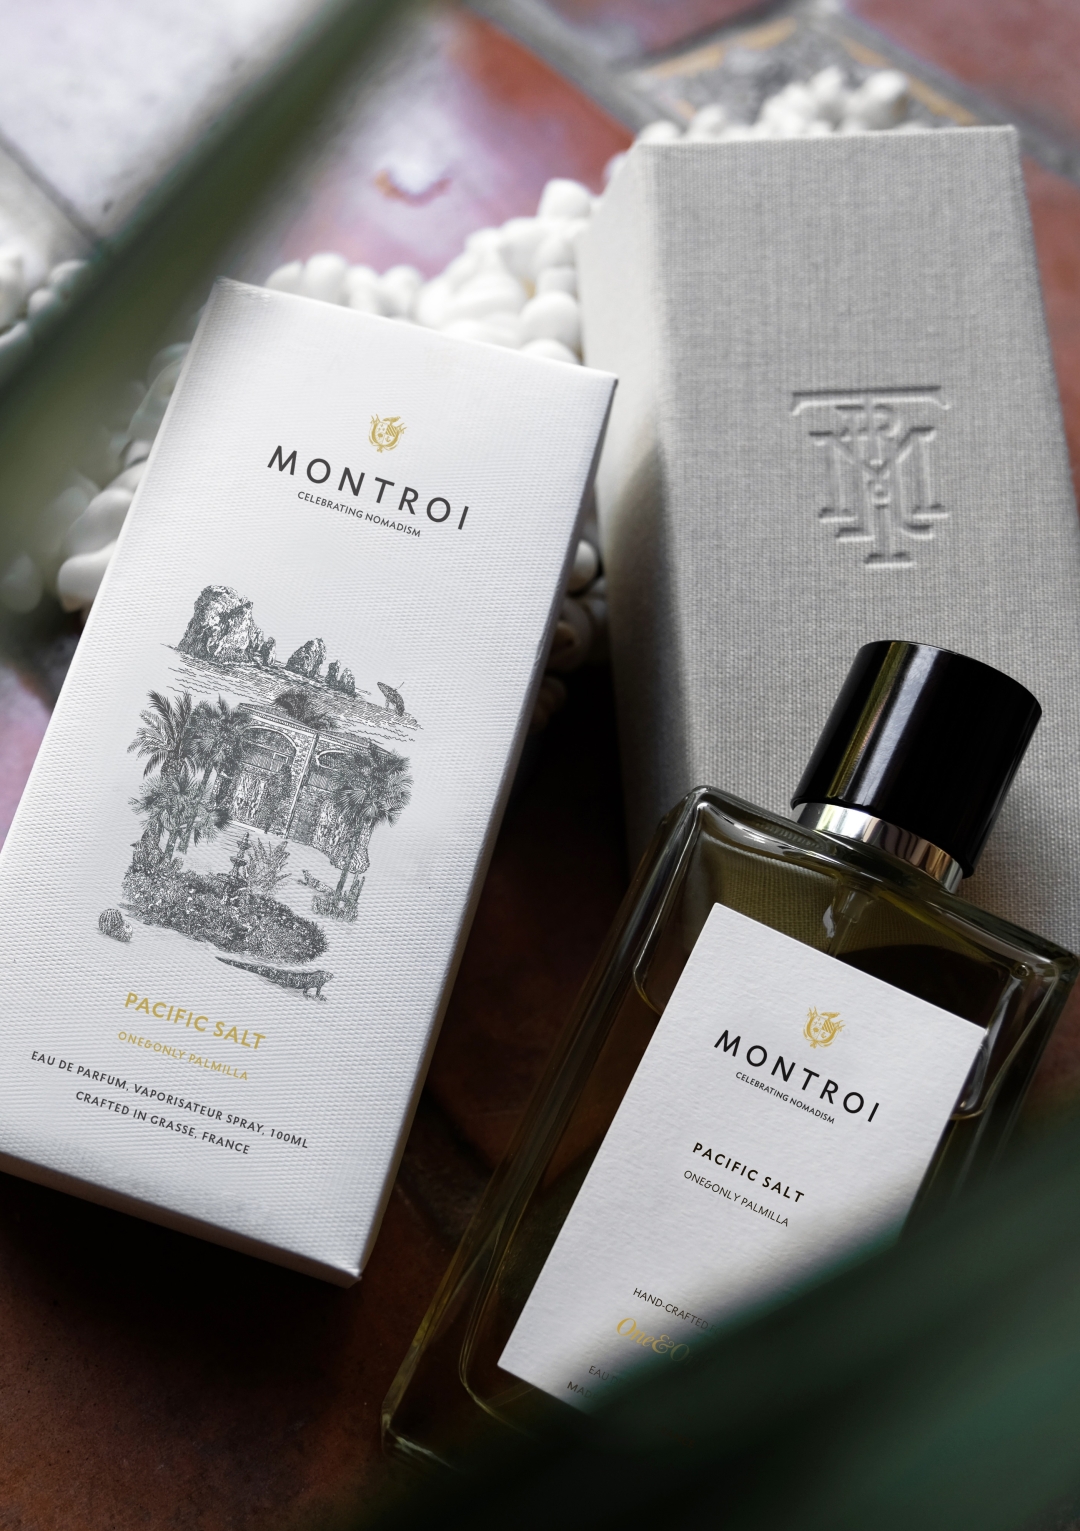 Kako mirišu ekskluzivni One&Only i Montroi mirisi koji podsjećaju na daleka putovanja?